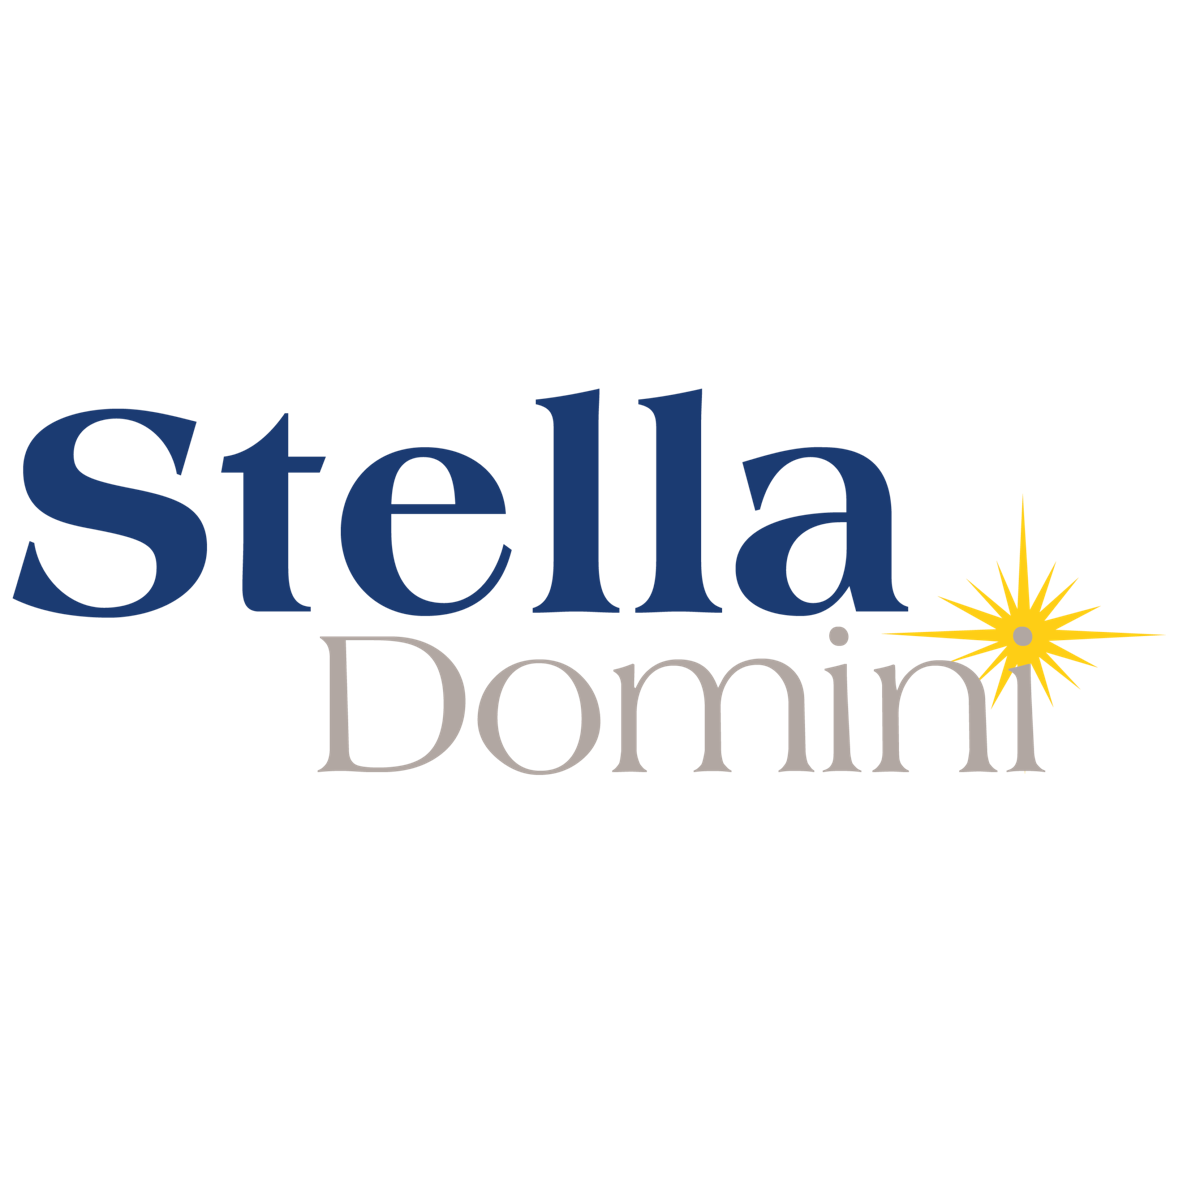 Stella Domini